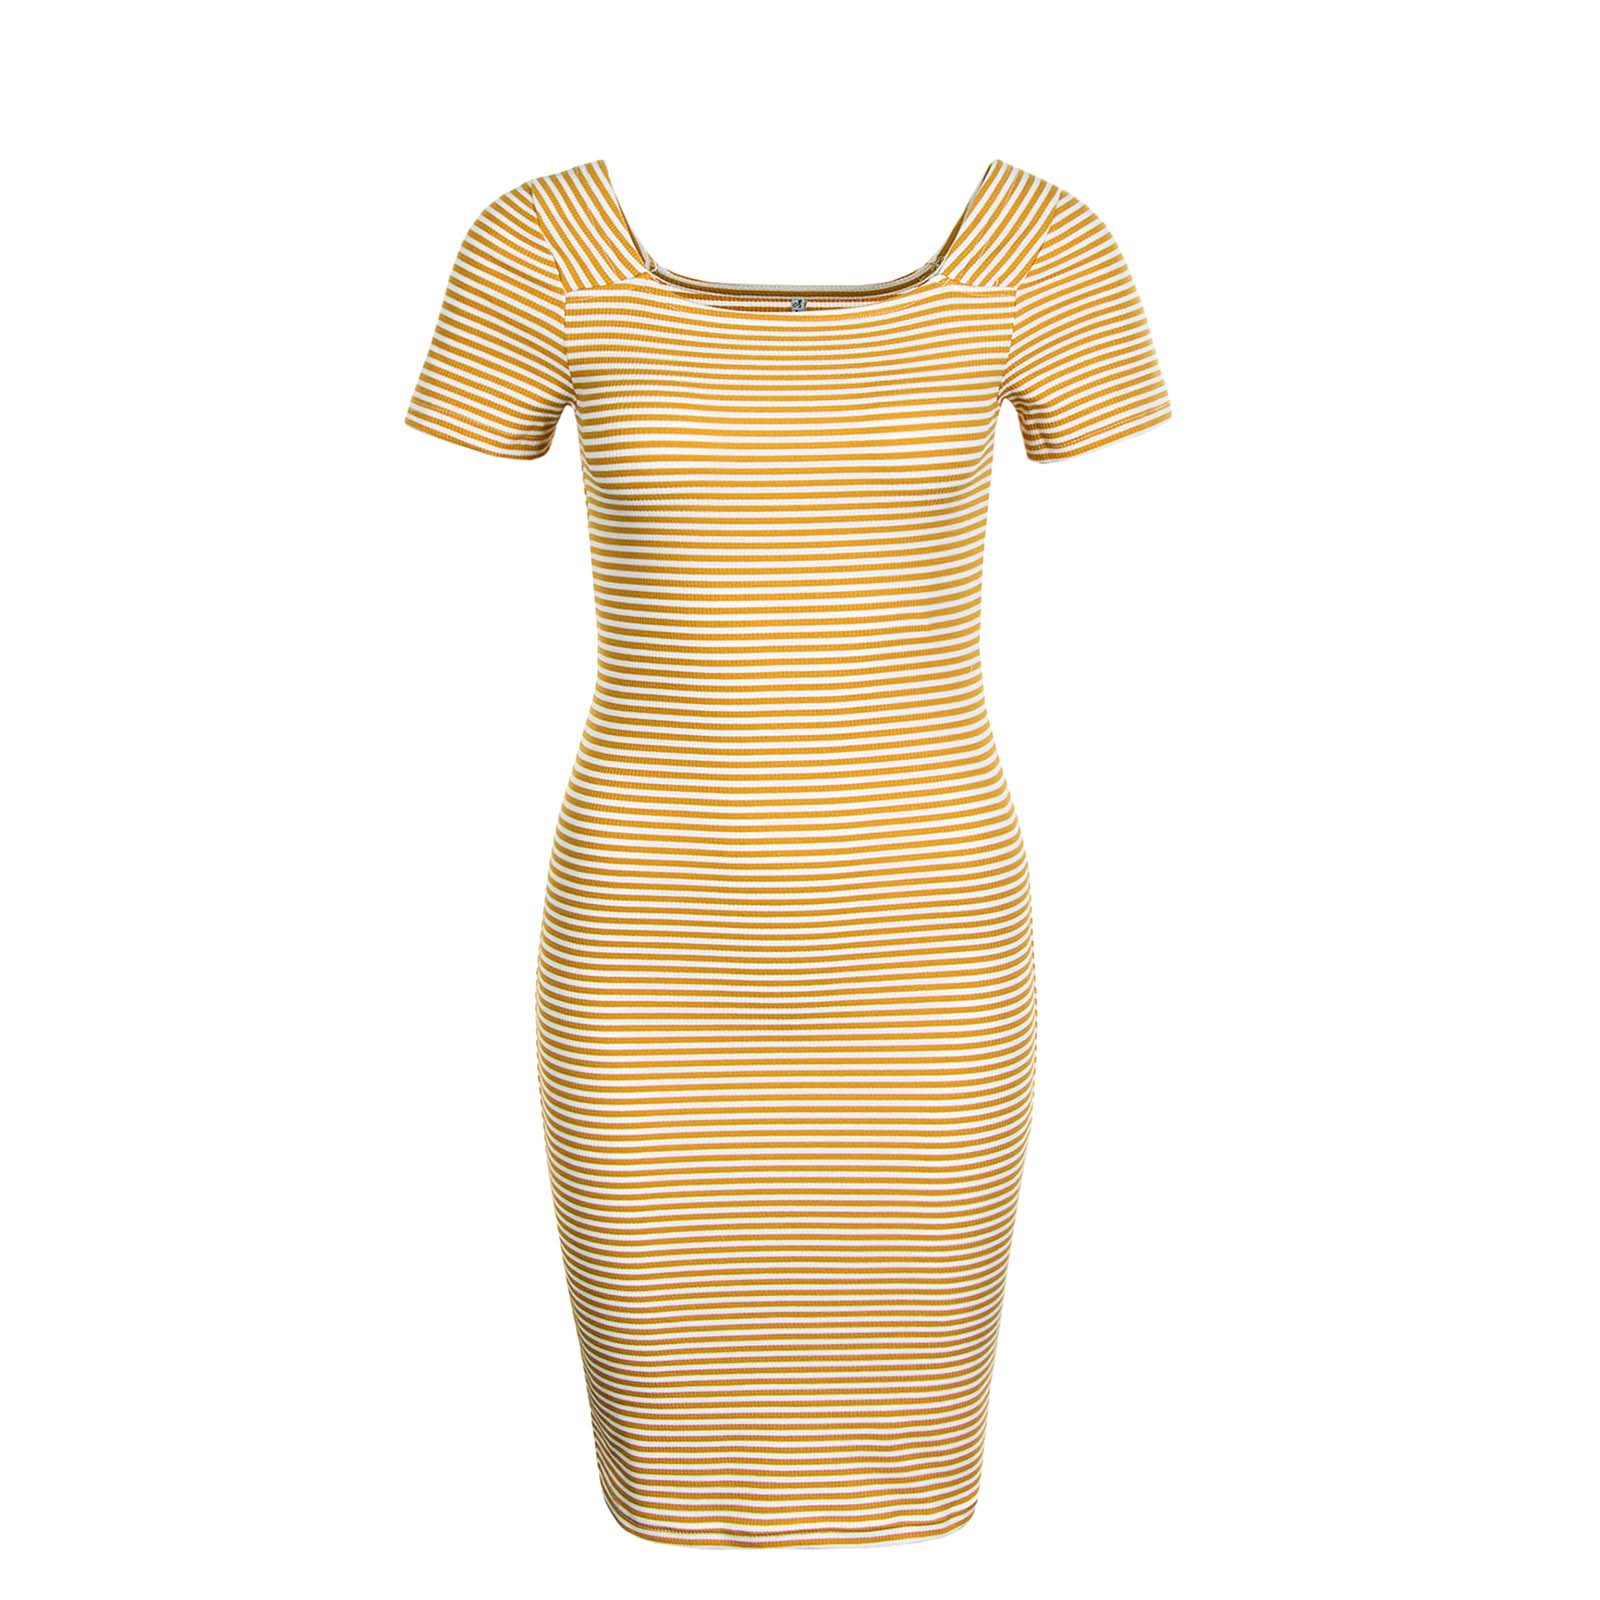 gelb-weißes Damen Kleid von Only online kaufen ...